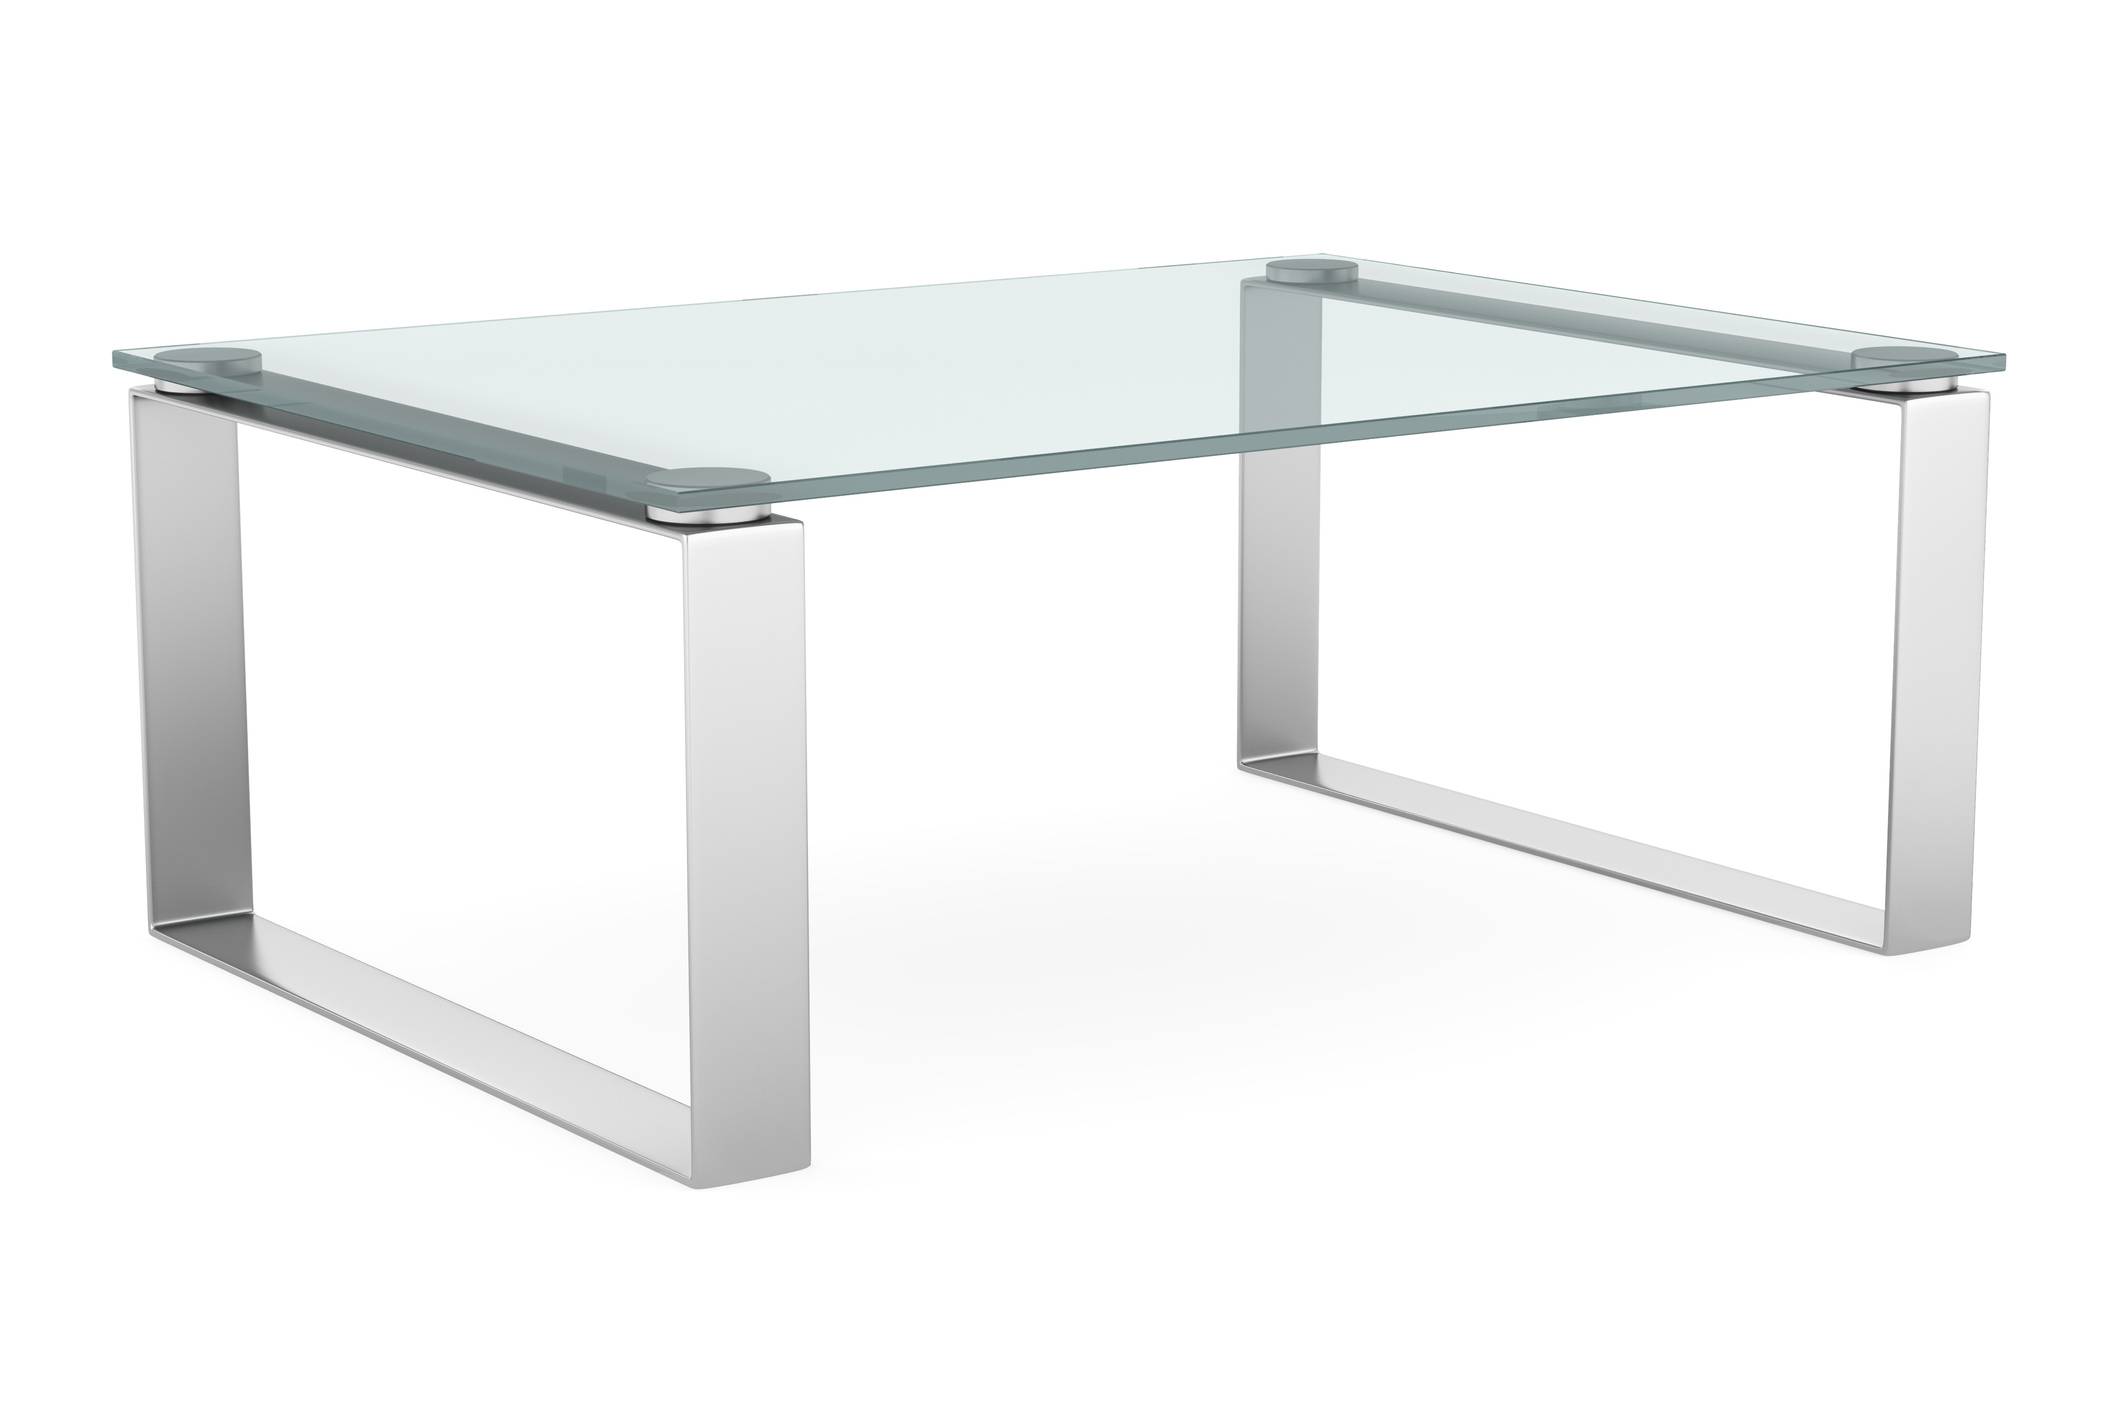 Comment protéger une table en verre trempé ? – Artisan bricolage